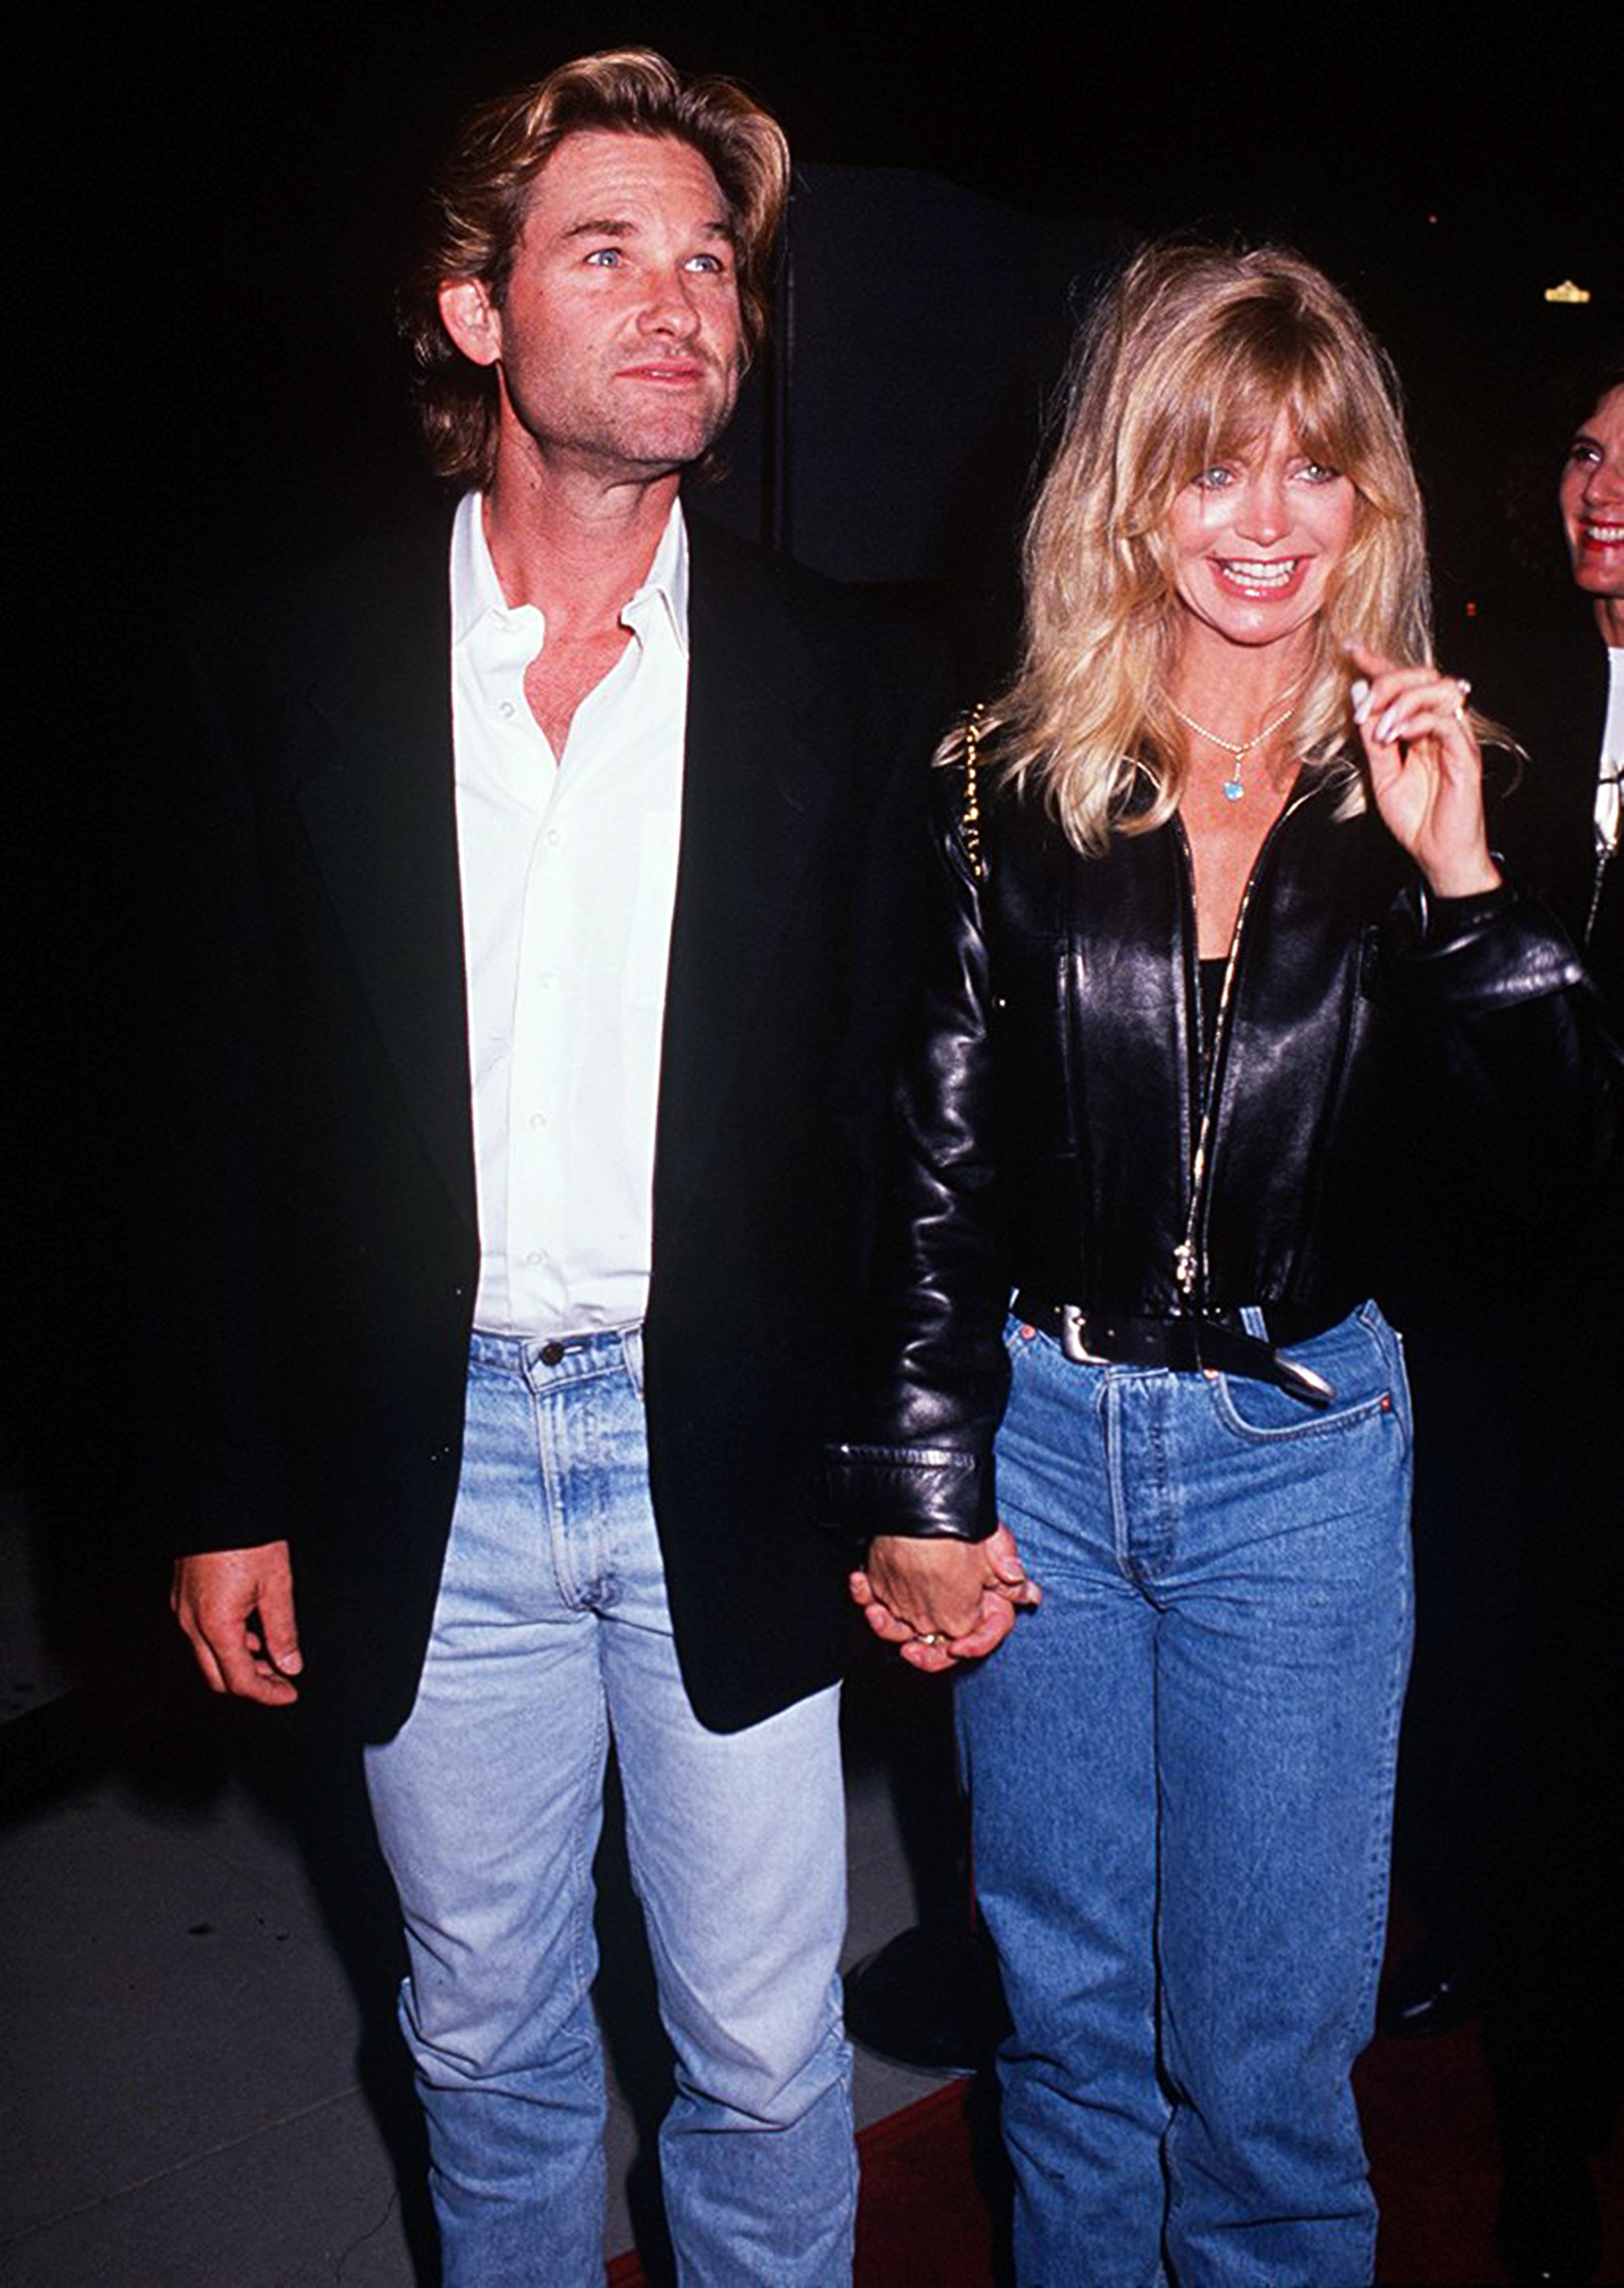 Die amerikanische Schauspielerin Goldie Hawn mit ihrem Partner, dem Schauspieler Kurt Russell bei der Premiere von "Housesitter" in Beverly Hills im Academy Theatre am 9. Juni 1992 in Beverly Hills, Kalifornien | Quelle: Getty Images